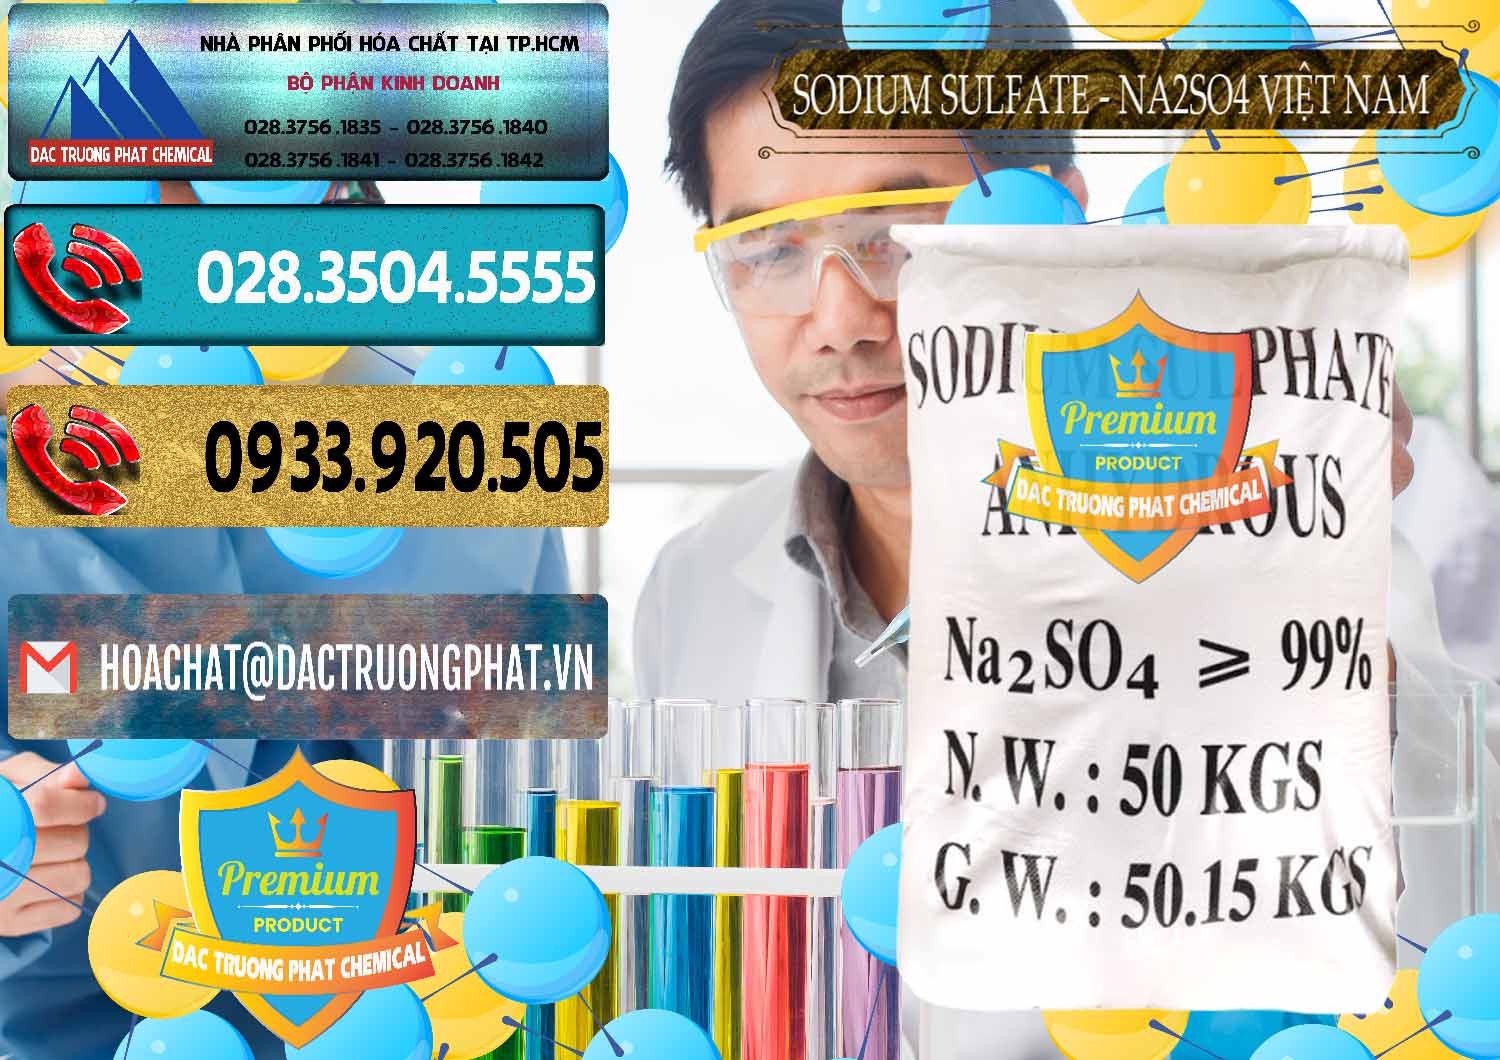 Cty bán _ cung cấp Sodium Sulphate - Muối Sunfat Na2SO4 Việt Nam - 0355 - Đơn vị chuyên cung ứng - bán hóa chất tại TP.HCM - hoachatdetnhuom.com